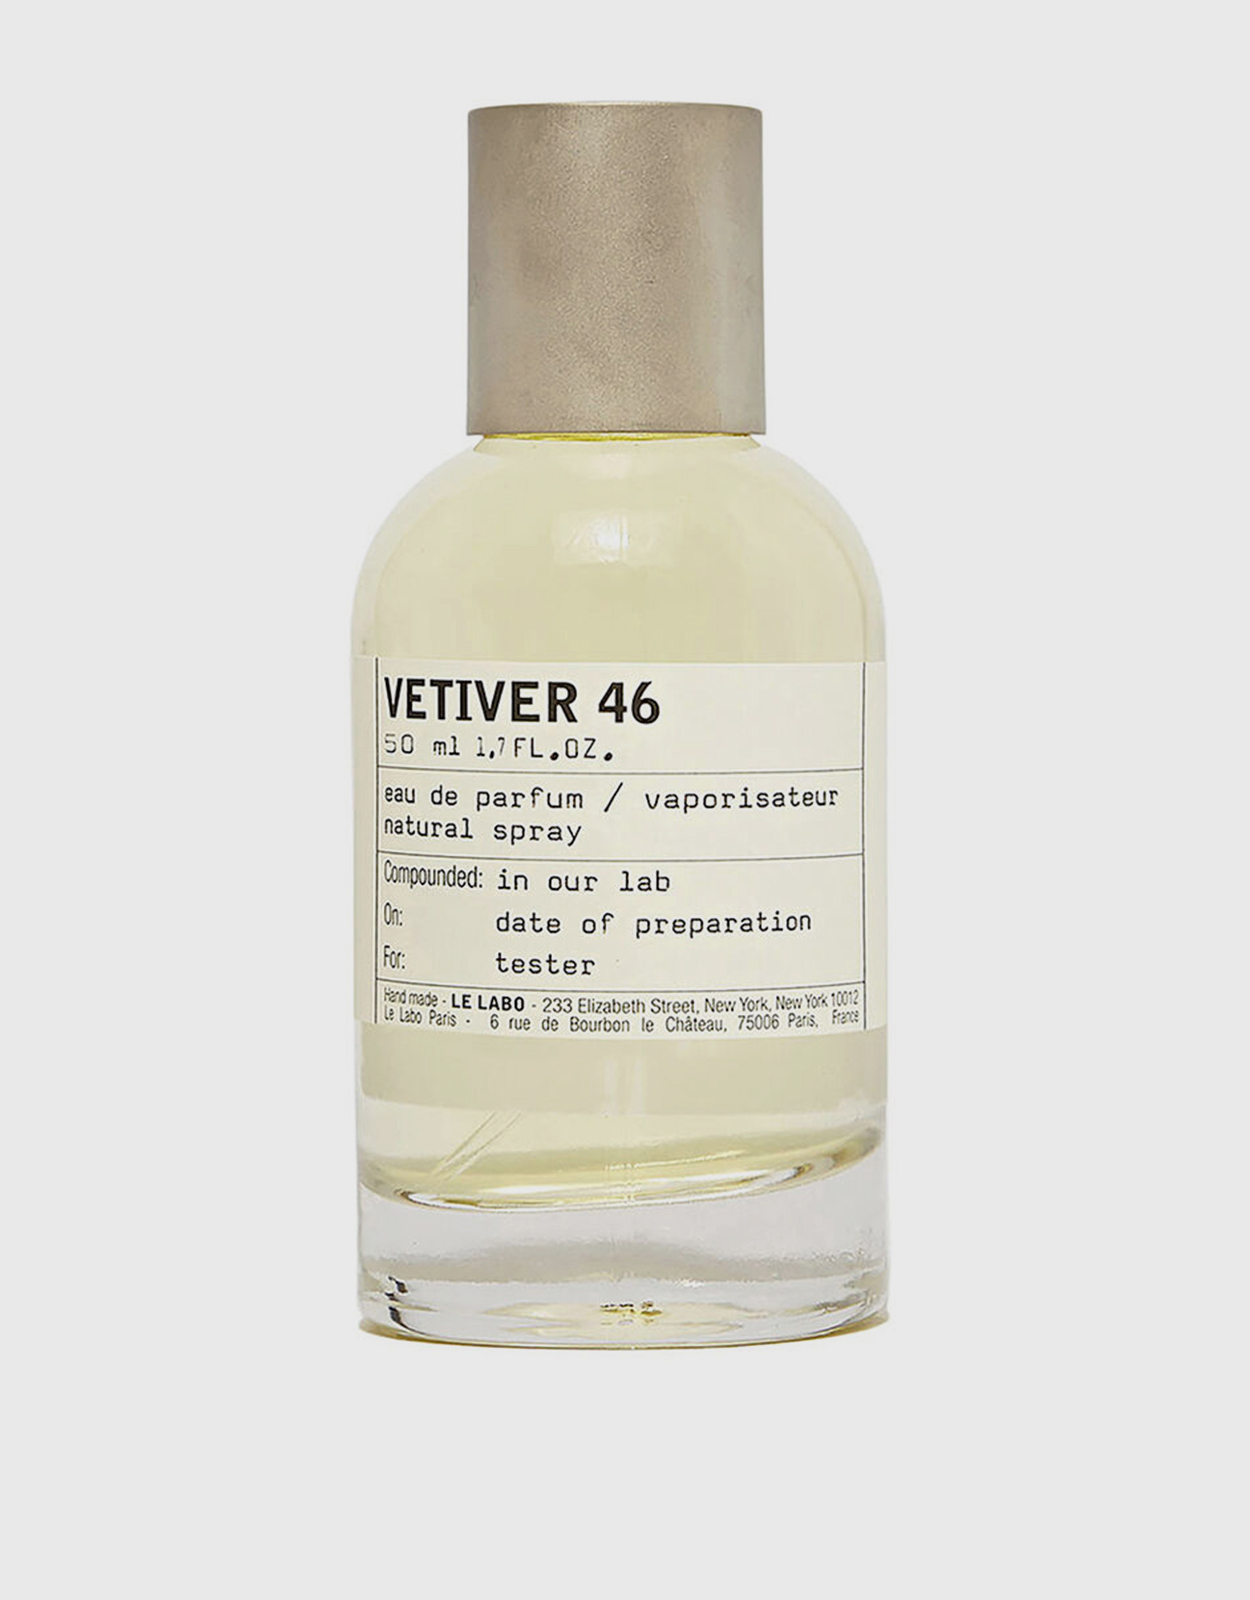 Le Labo Vetiver 46 Unisex Eau de Parfum 50ml (Fragrance,Perfume,Men)  IFCHIC.COM